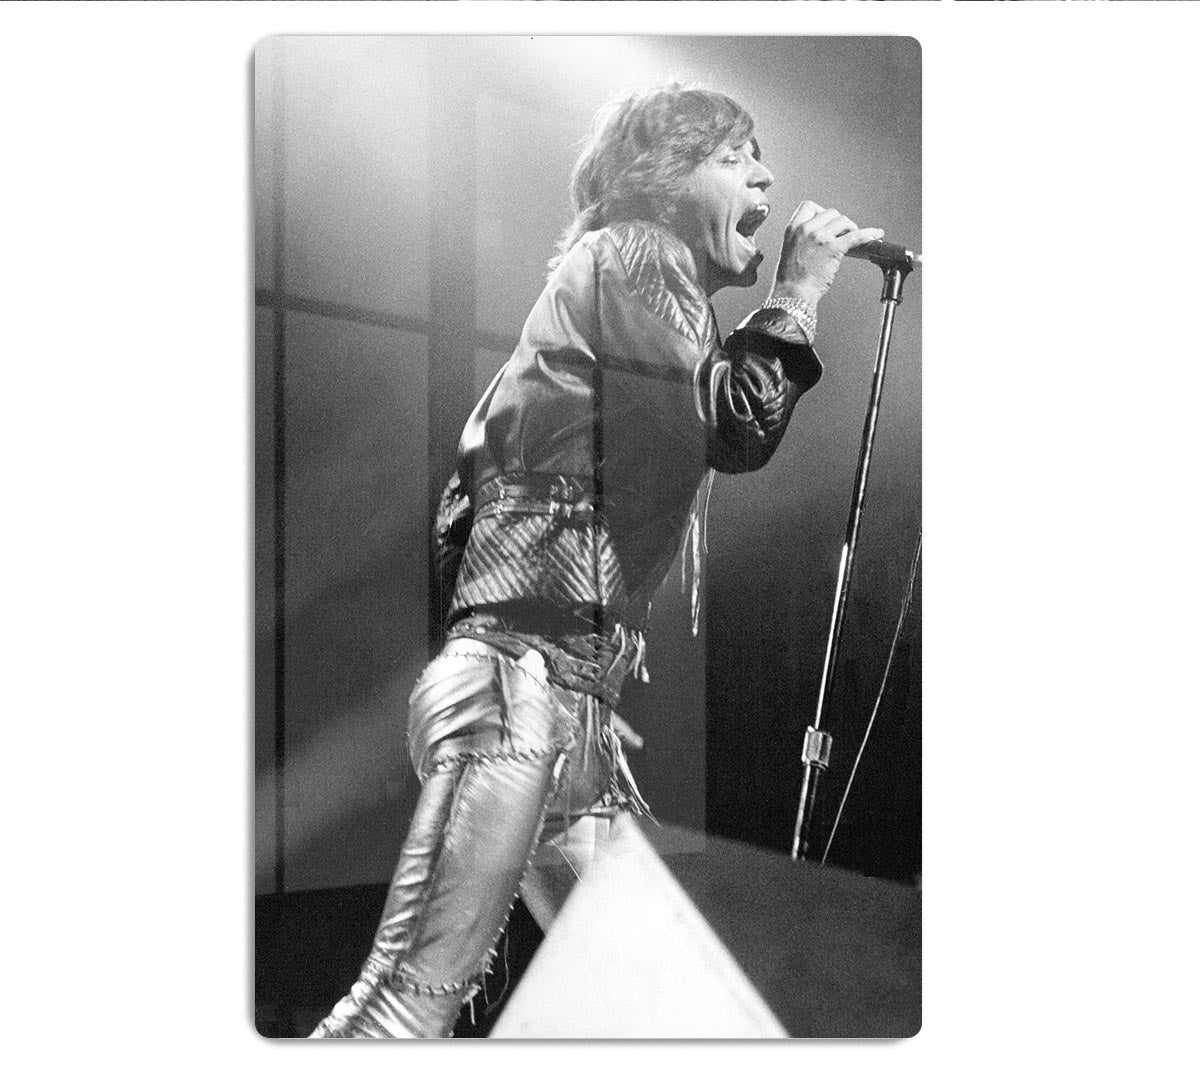 Mick Jagger 1973 HD Metal Print